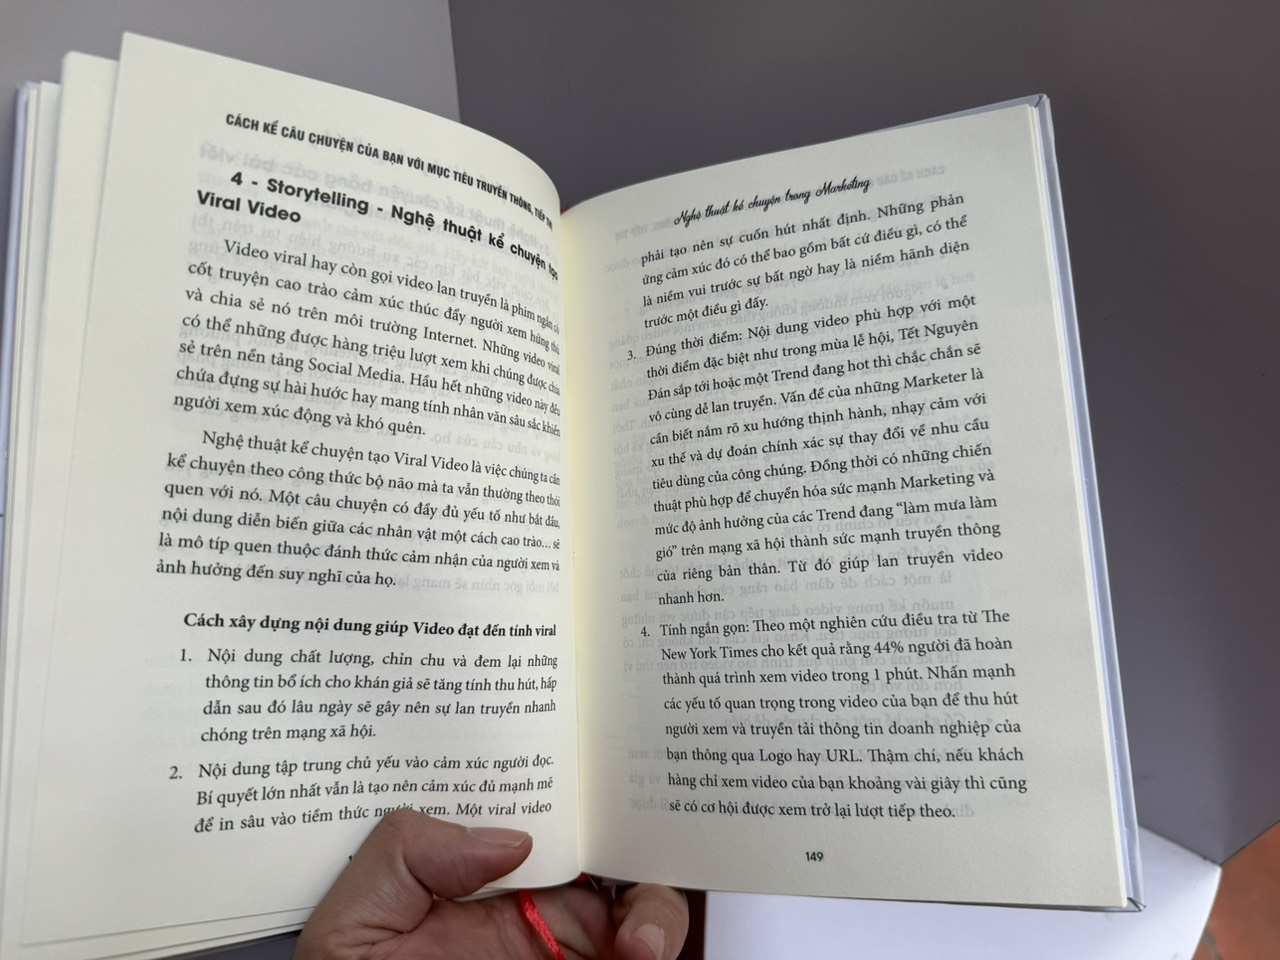 [Bìa cứng] Combo 2 cuốn nghệ thuật Marketing - STORYTELLING MARKETING - NGHỆ THUẬT KỂ CHUYỆN TRONG MARKETING - GAMIFICATION MARKETING - NGHỆ THUẬT GAME HÓA TRONG MARKETING - Nguyễn Vũ Huy Hoàng - Mochi Books - NXB Lao Động.